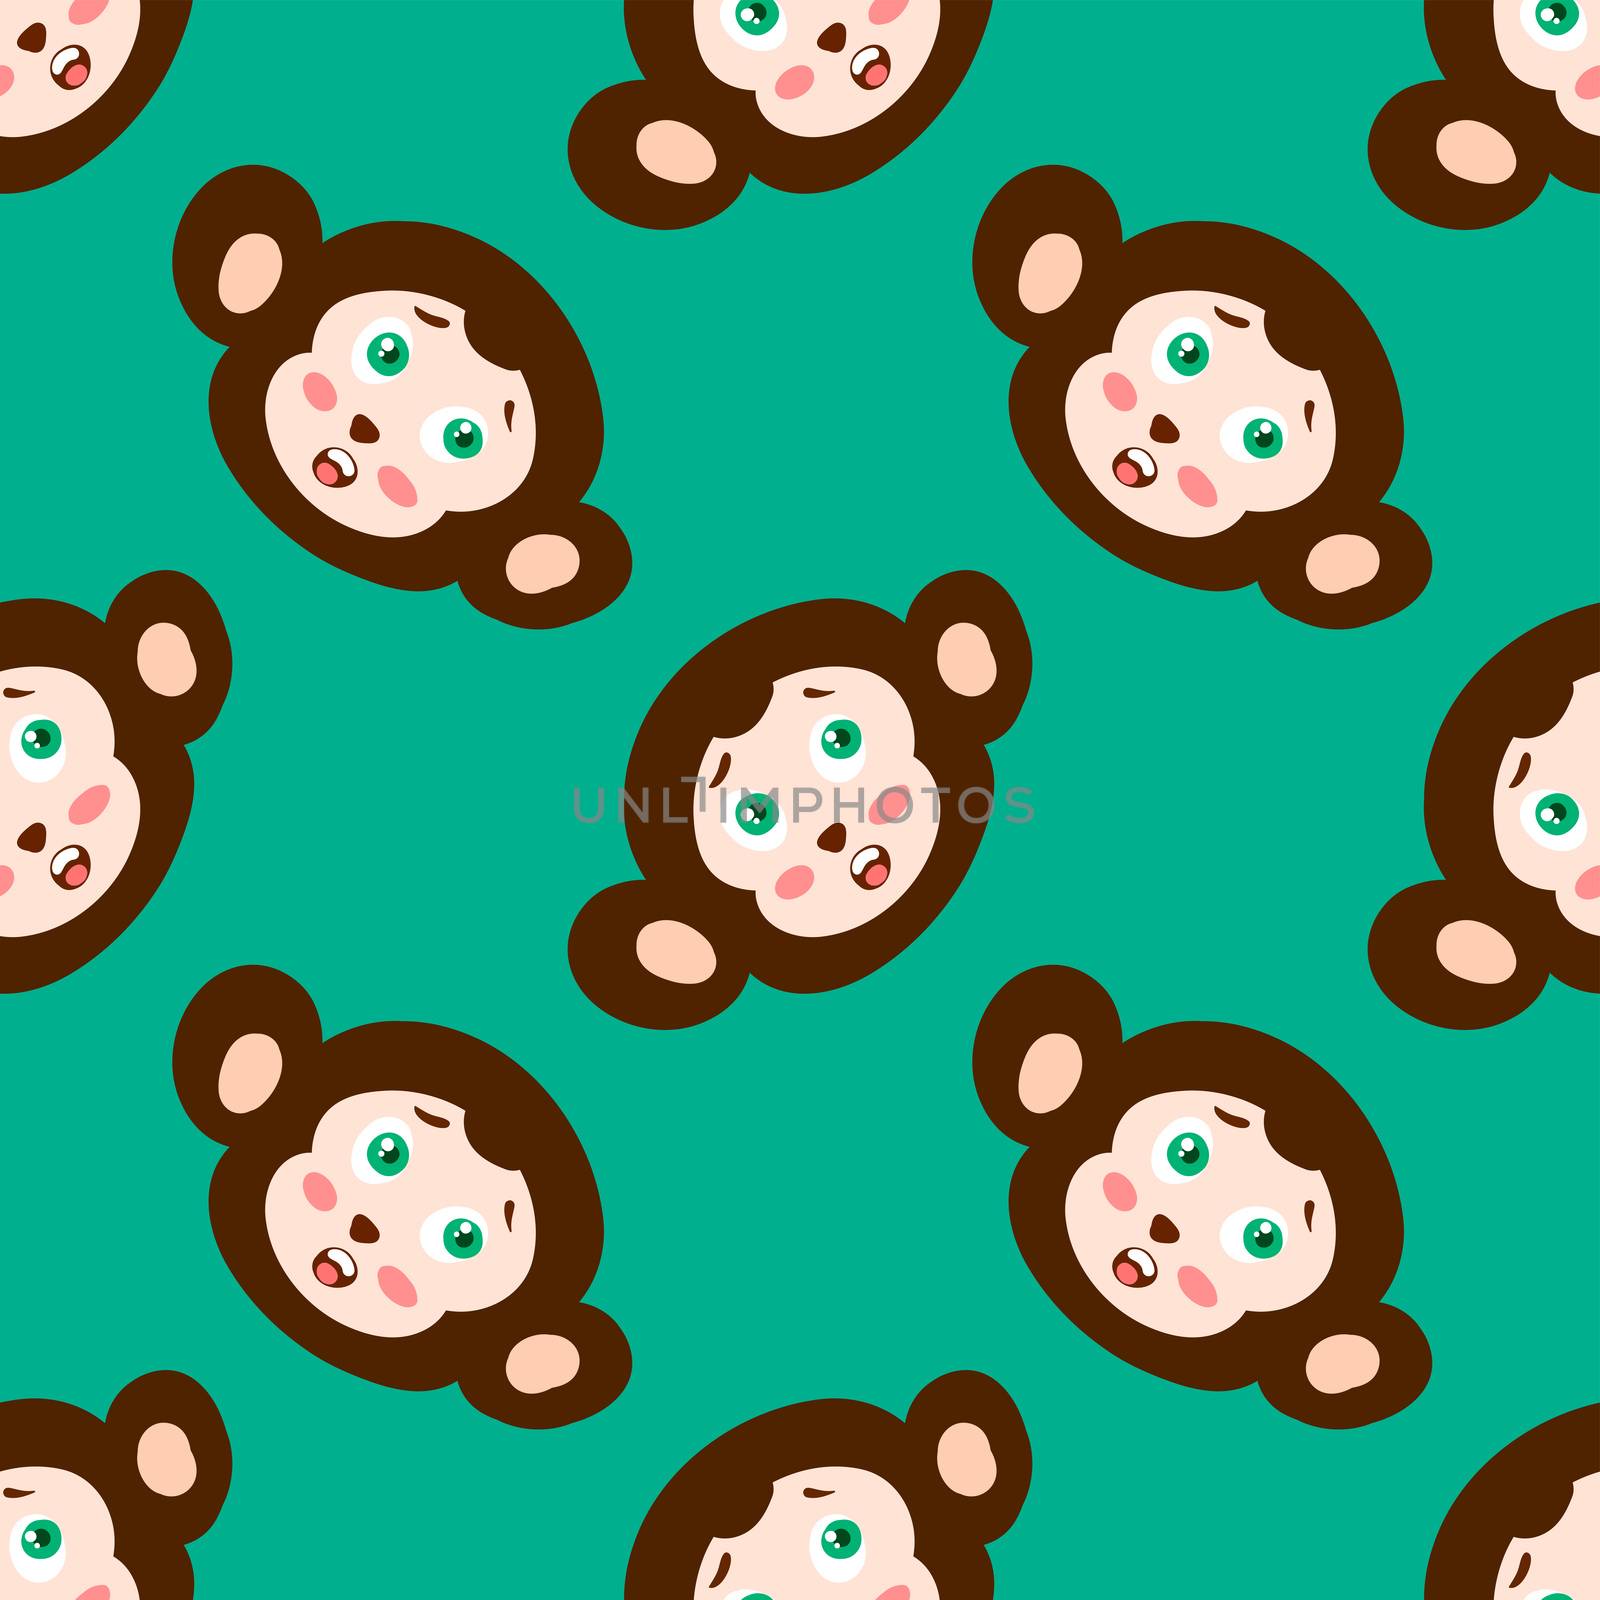 Monkeys pattern , illustration, vector on white background by Morphart